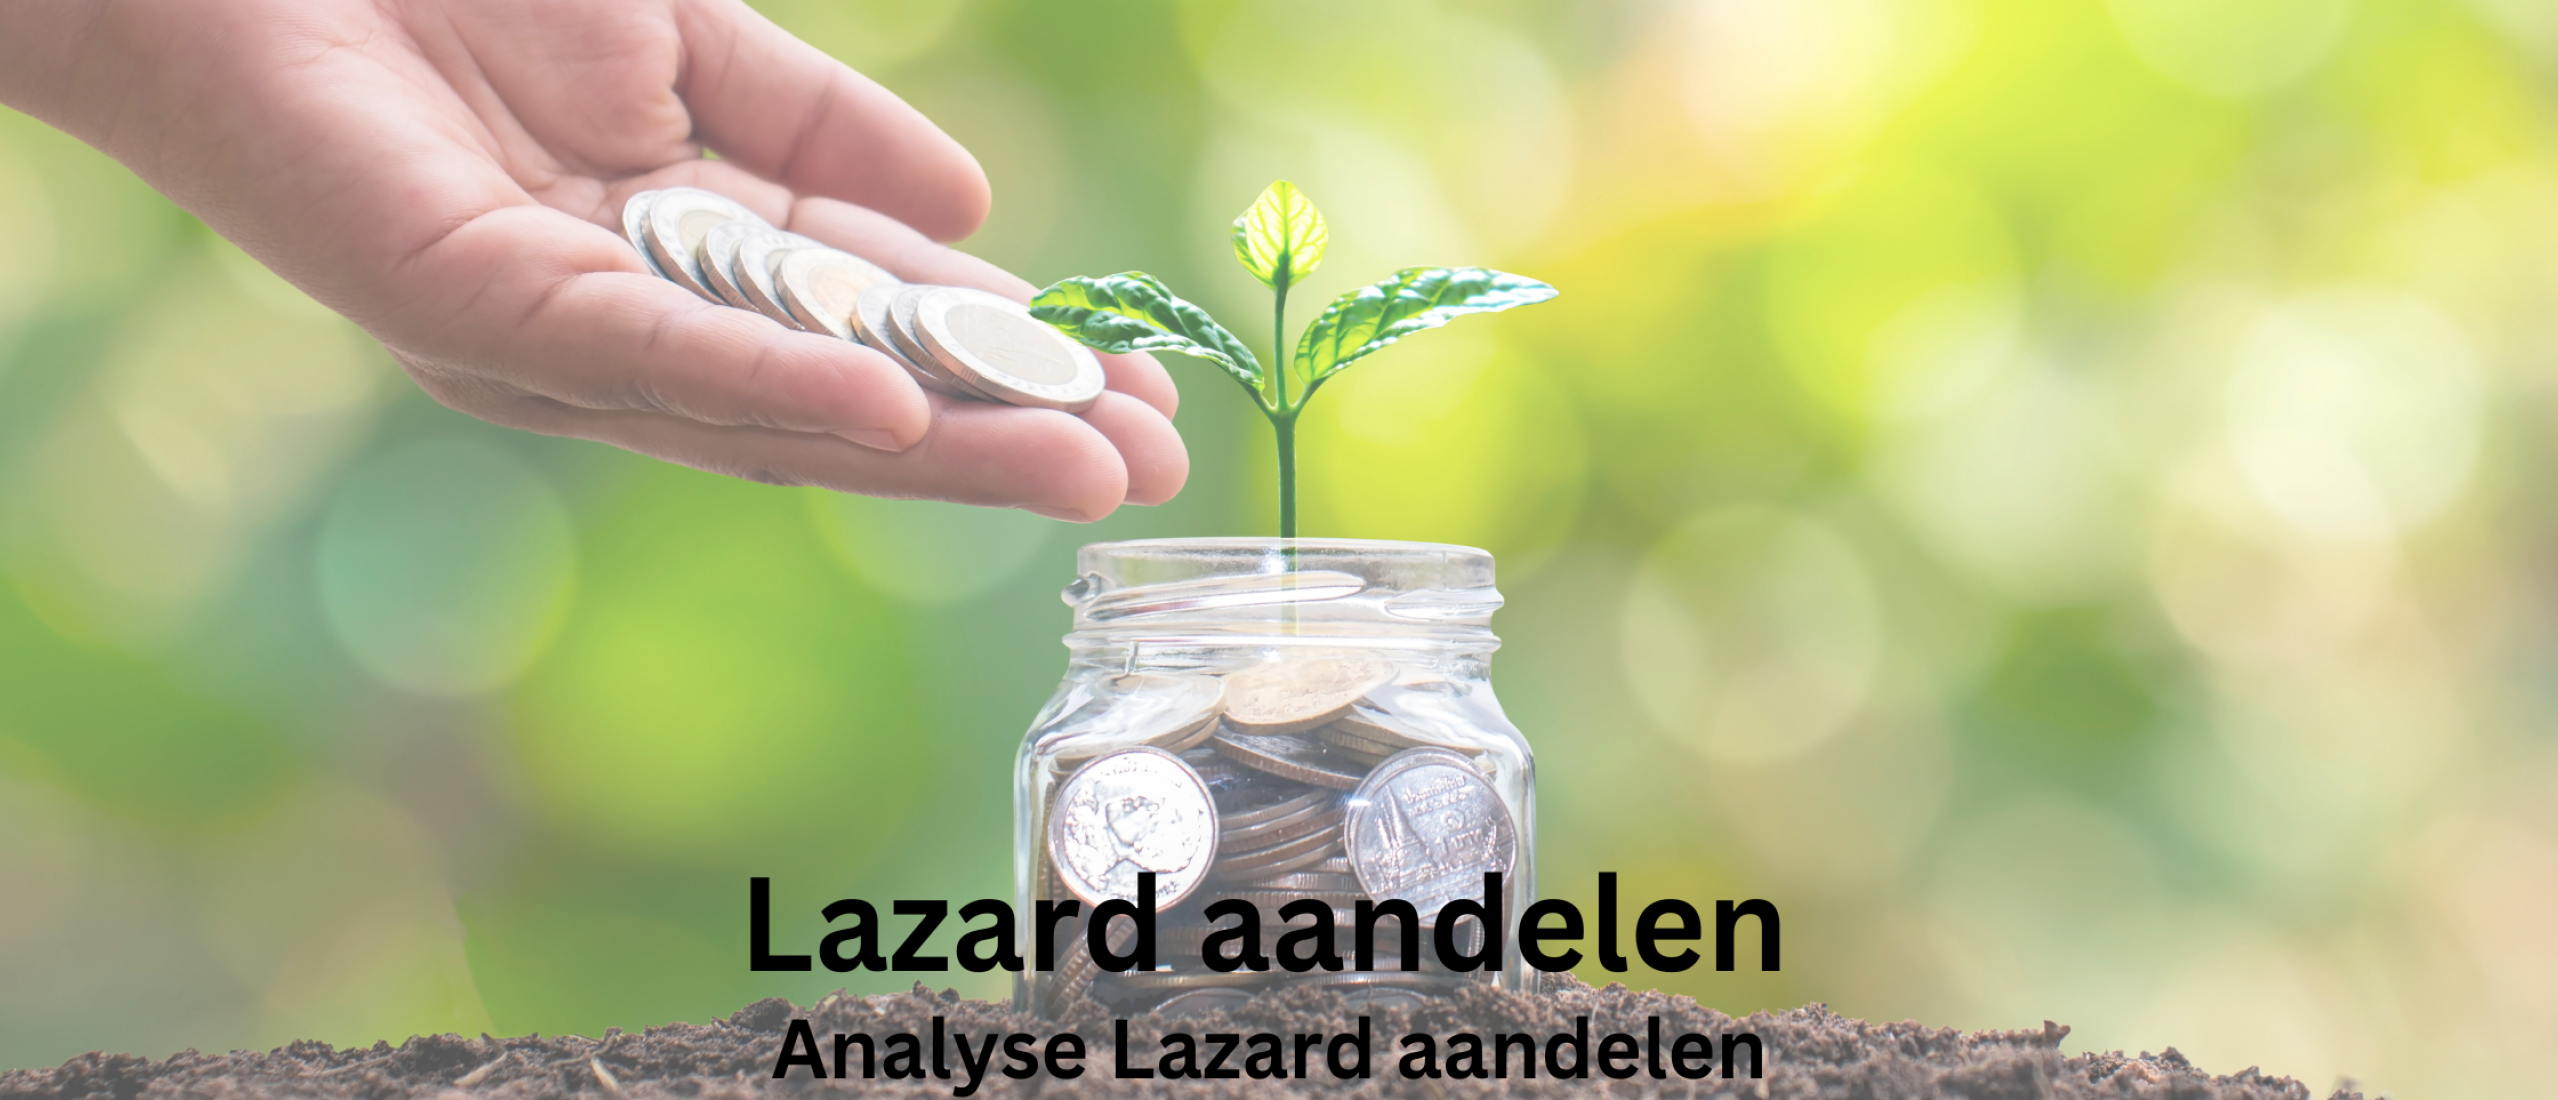 Lazard aandelen kopen? +32,3% Groei en +5,7% Dividend | Happy Investors